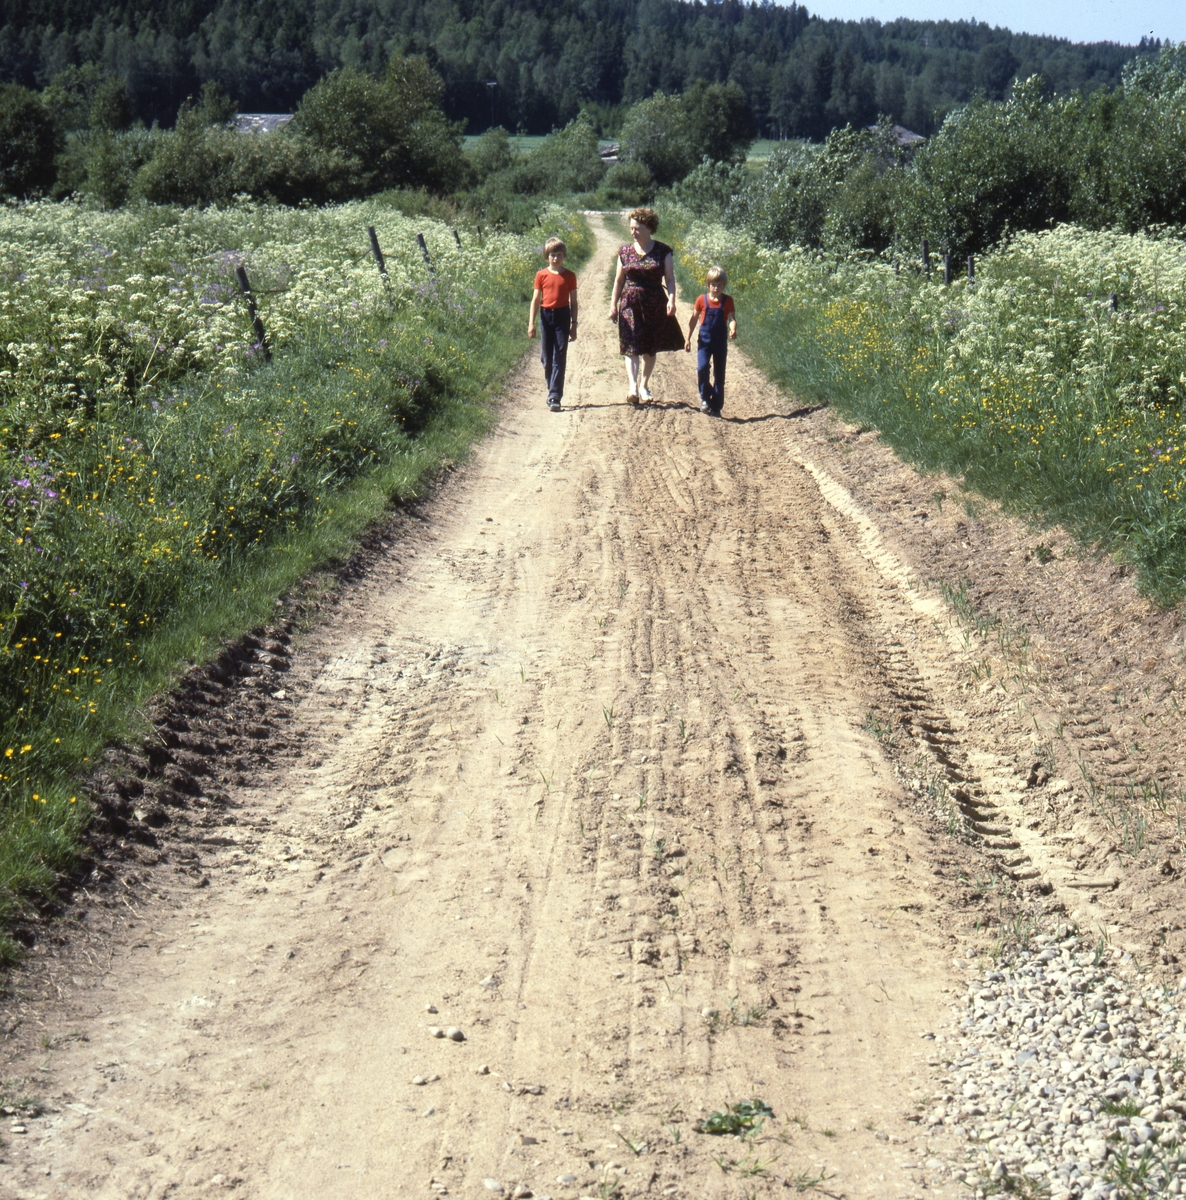 Efter vägen.... Adéle och Elfströms pojkarna kommer gående på en jordig väg kantad av sommarblommor, 1979.